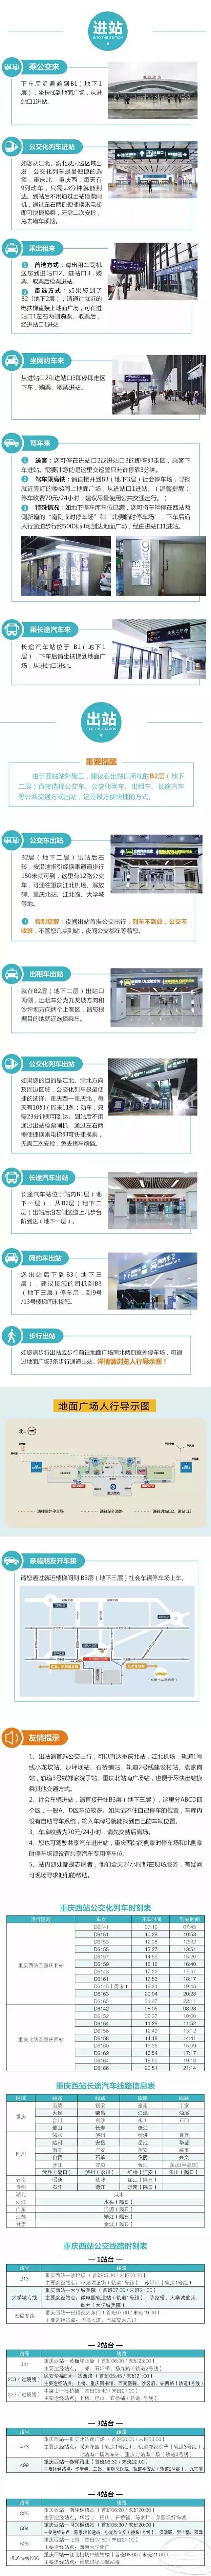 重庆西站列车时刻表最新 2019重庆春节加开列车车次+停运列车